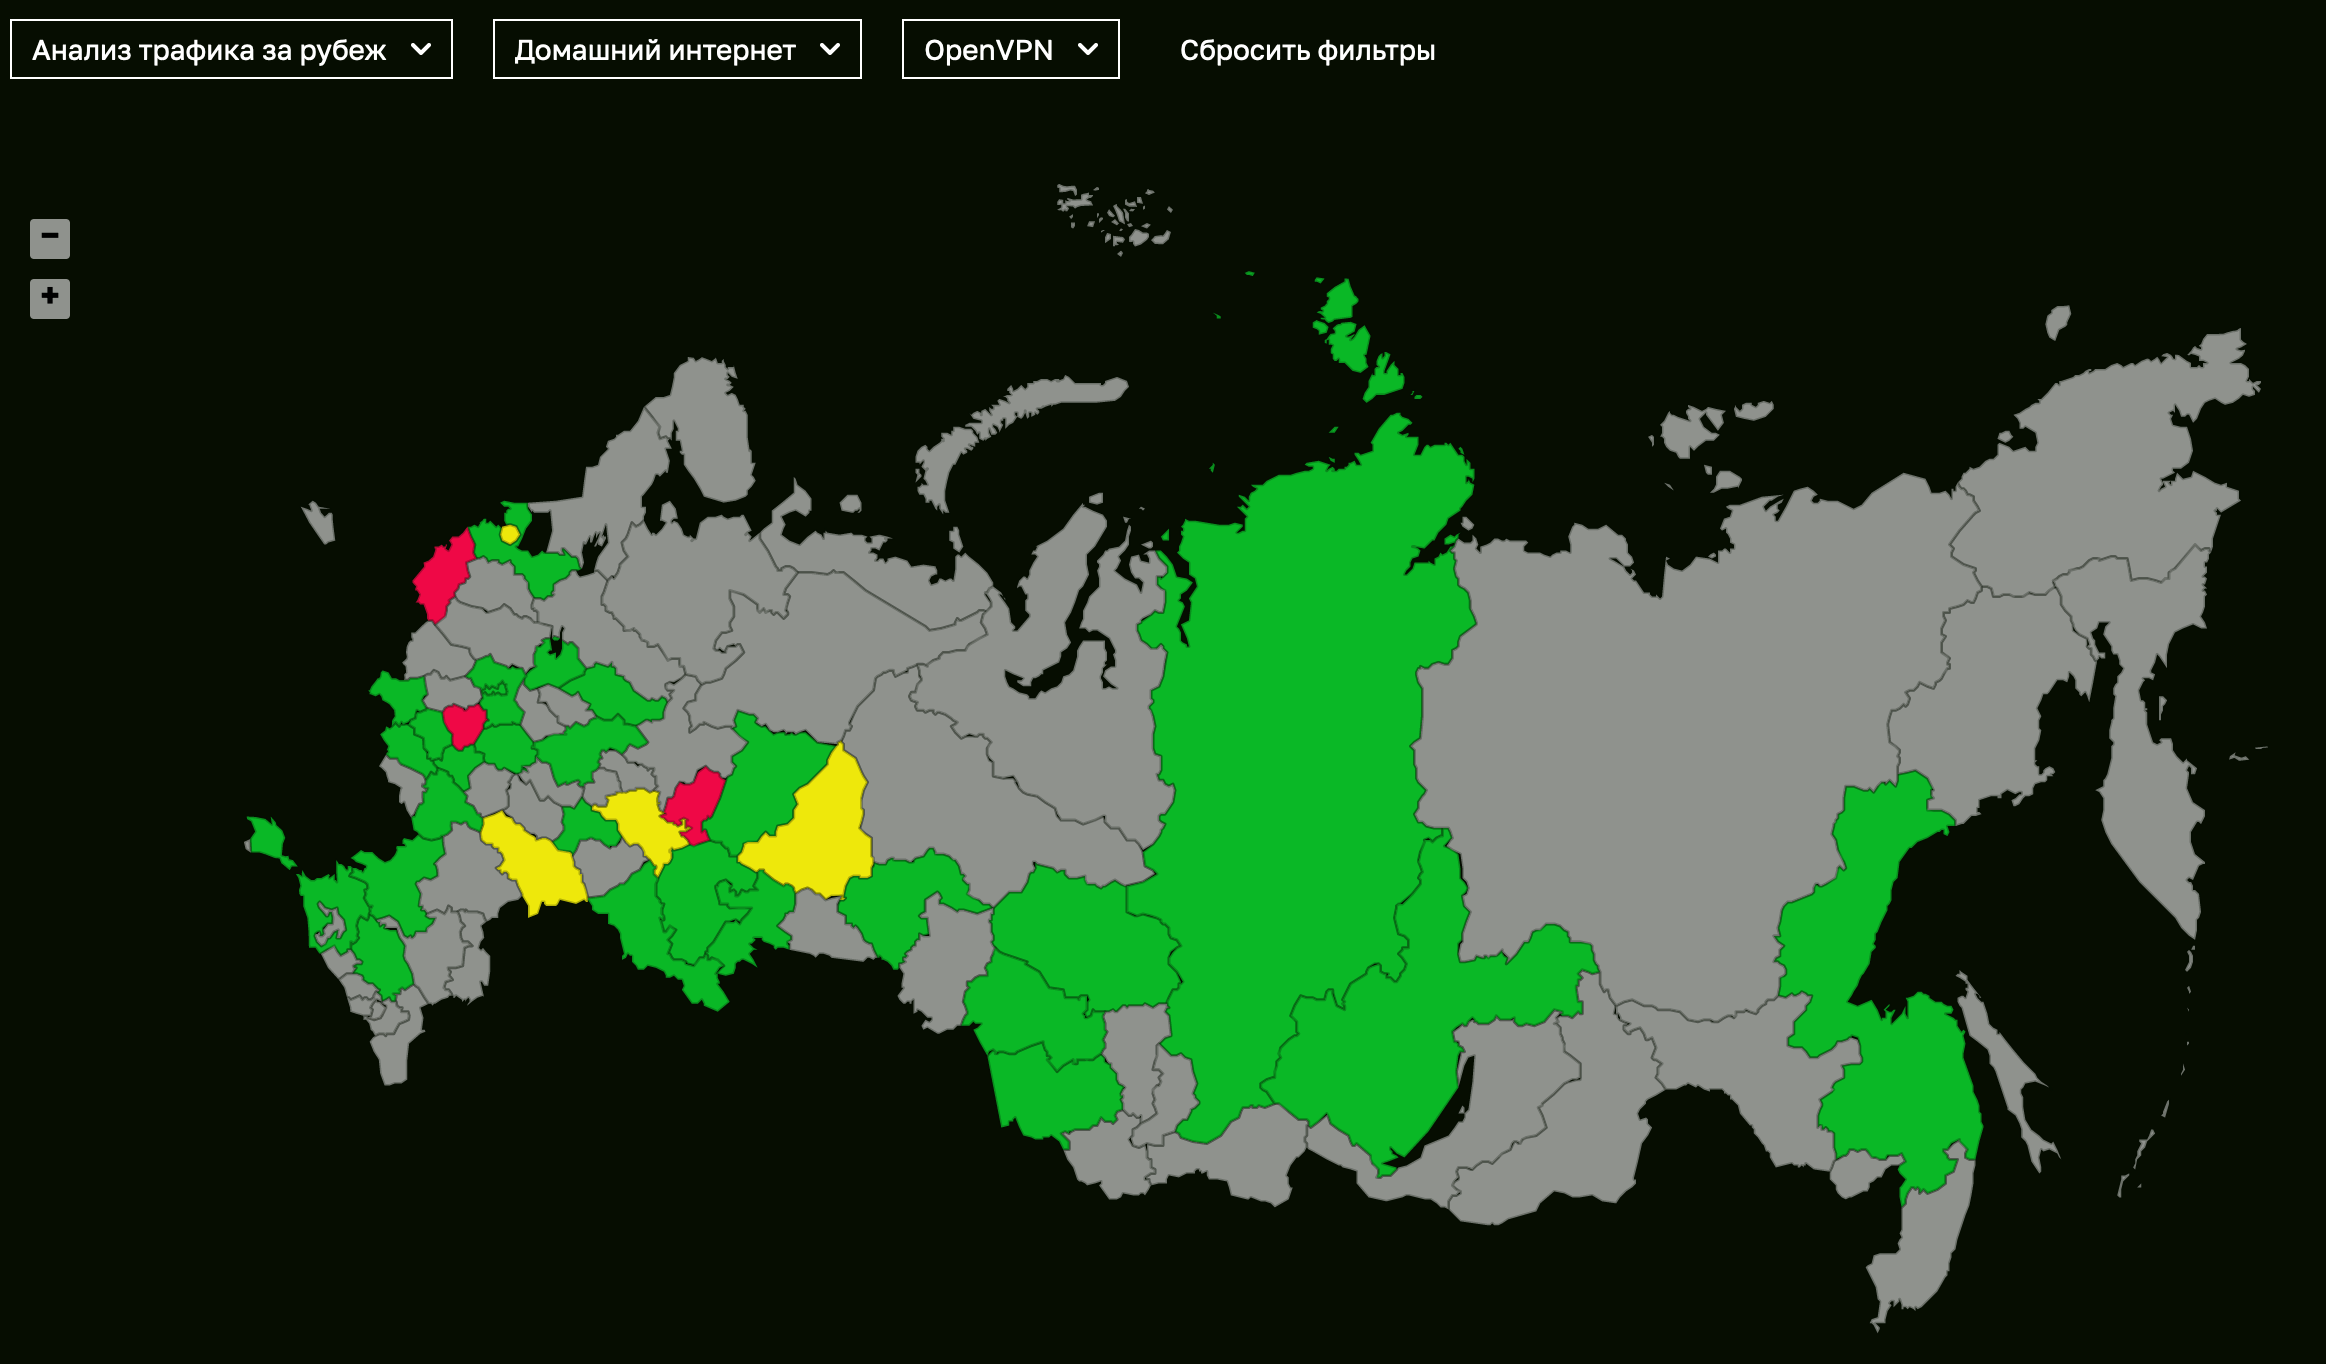 Карта доступности протокола OpenVPN в регионах России по данным DPIdetector. Желтый - затруднения, красный - блокировка, зеленый - доступен.